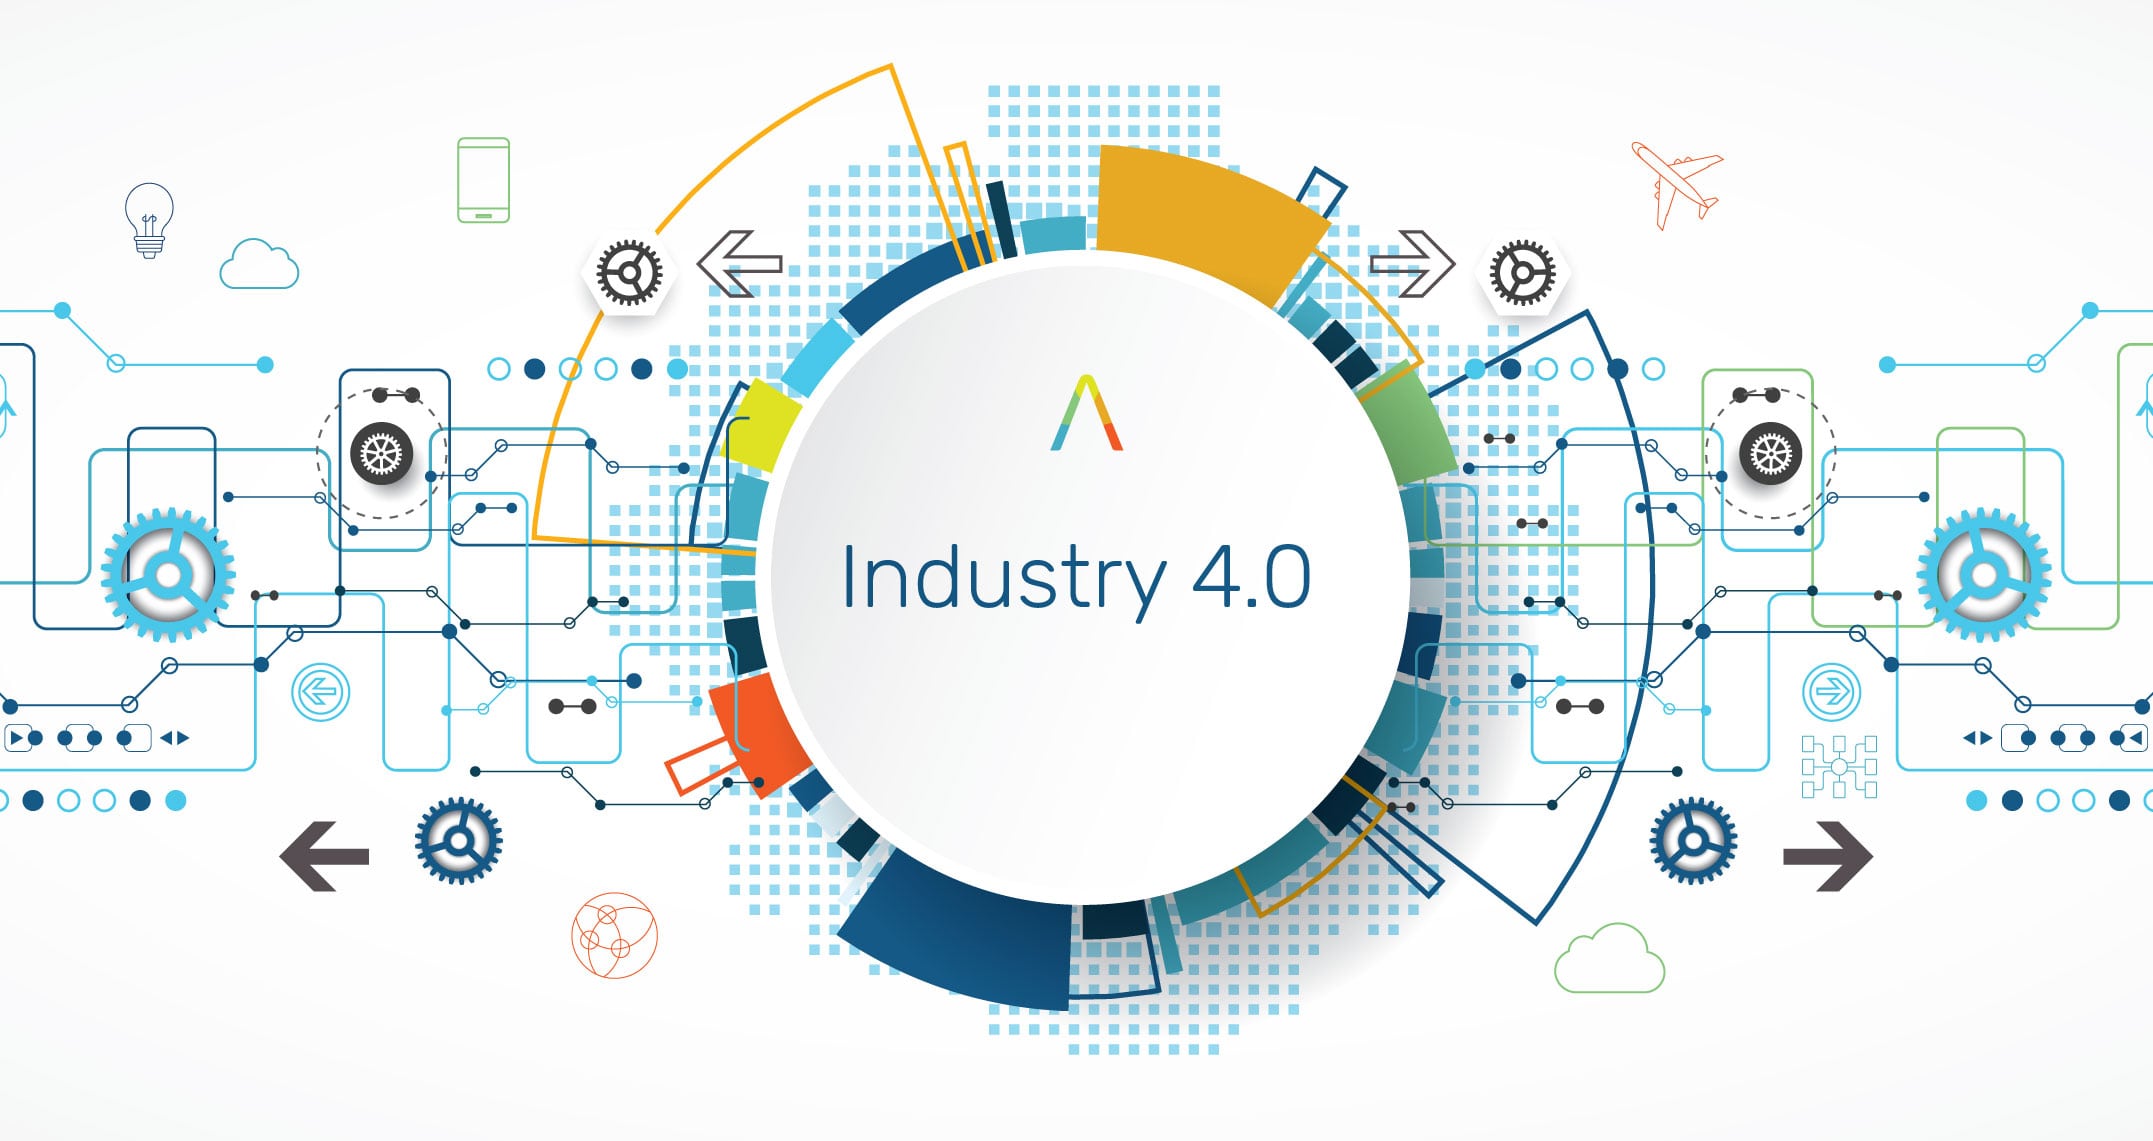 industry 4.0 logo